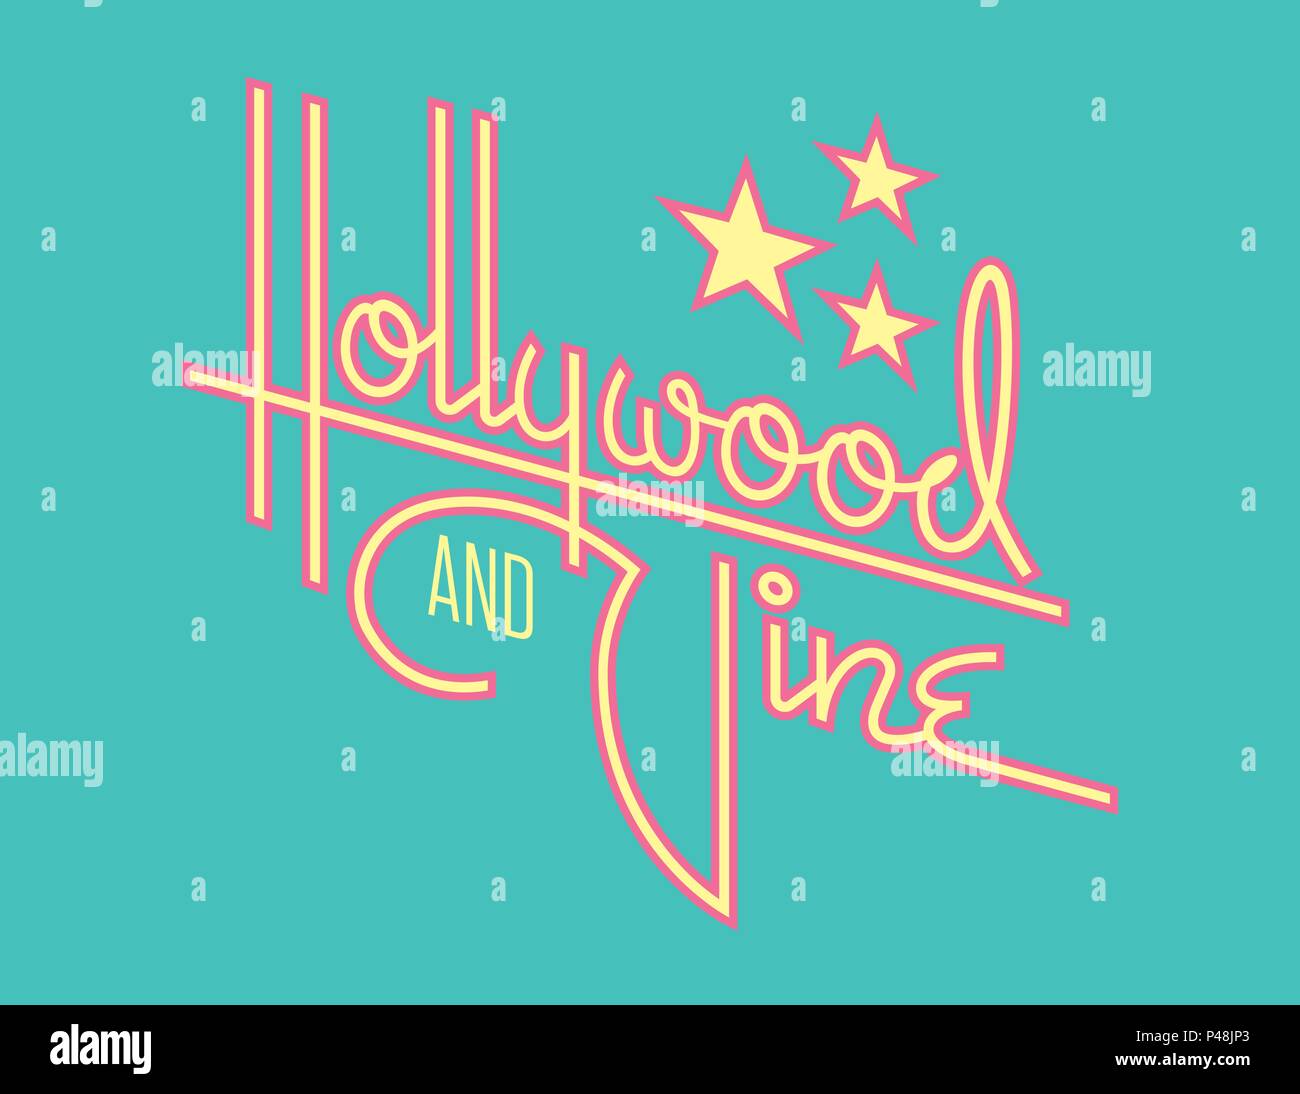 Hollywood Retro Vektor Design mit Sternen. Benutzerdefinierte Hand gezeichnet script Design des Wortes Hollywood mit Retro Stil der 1950er Jahre vibe. Stock Vektor